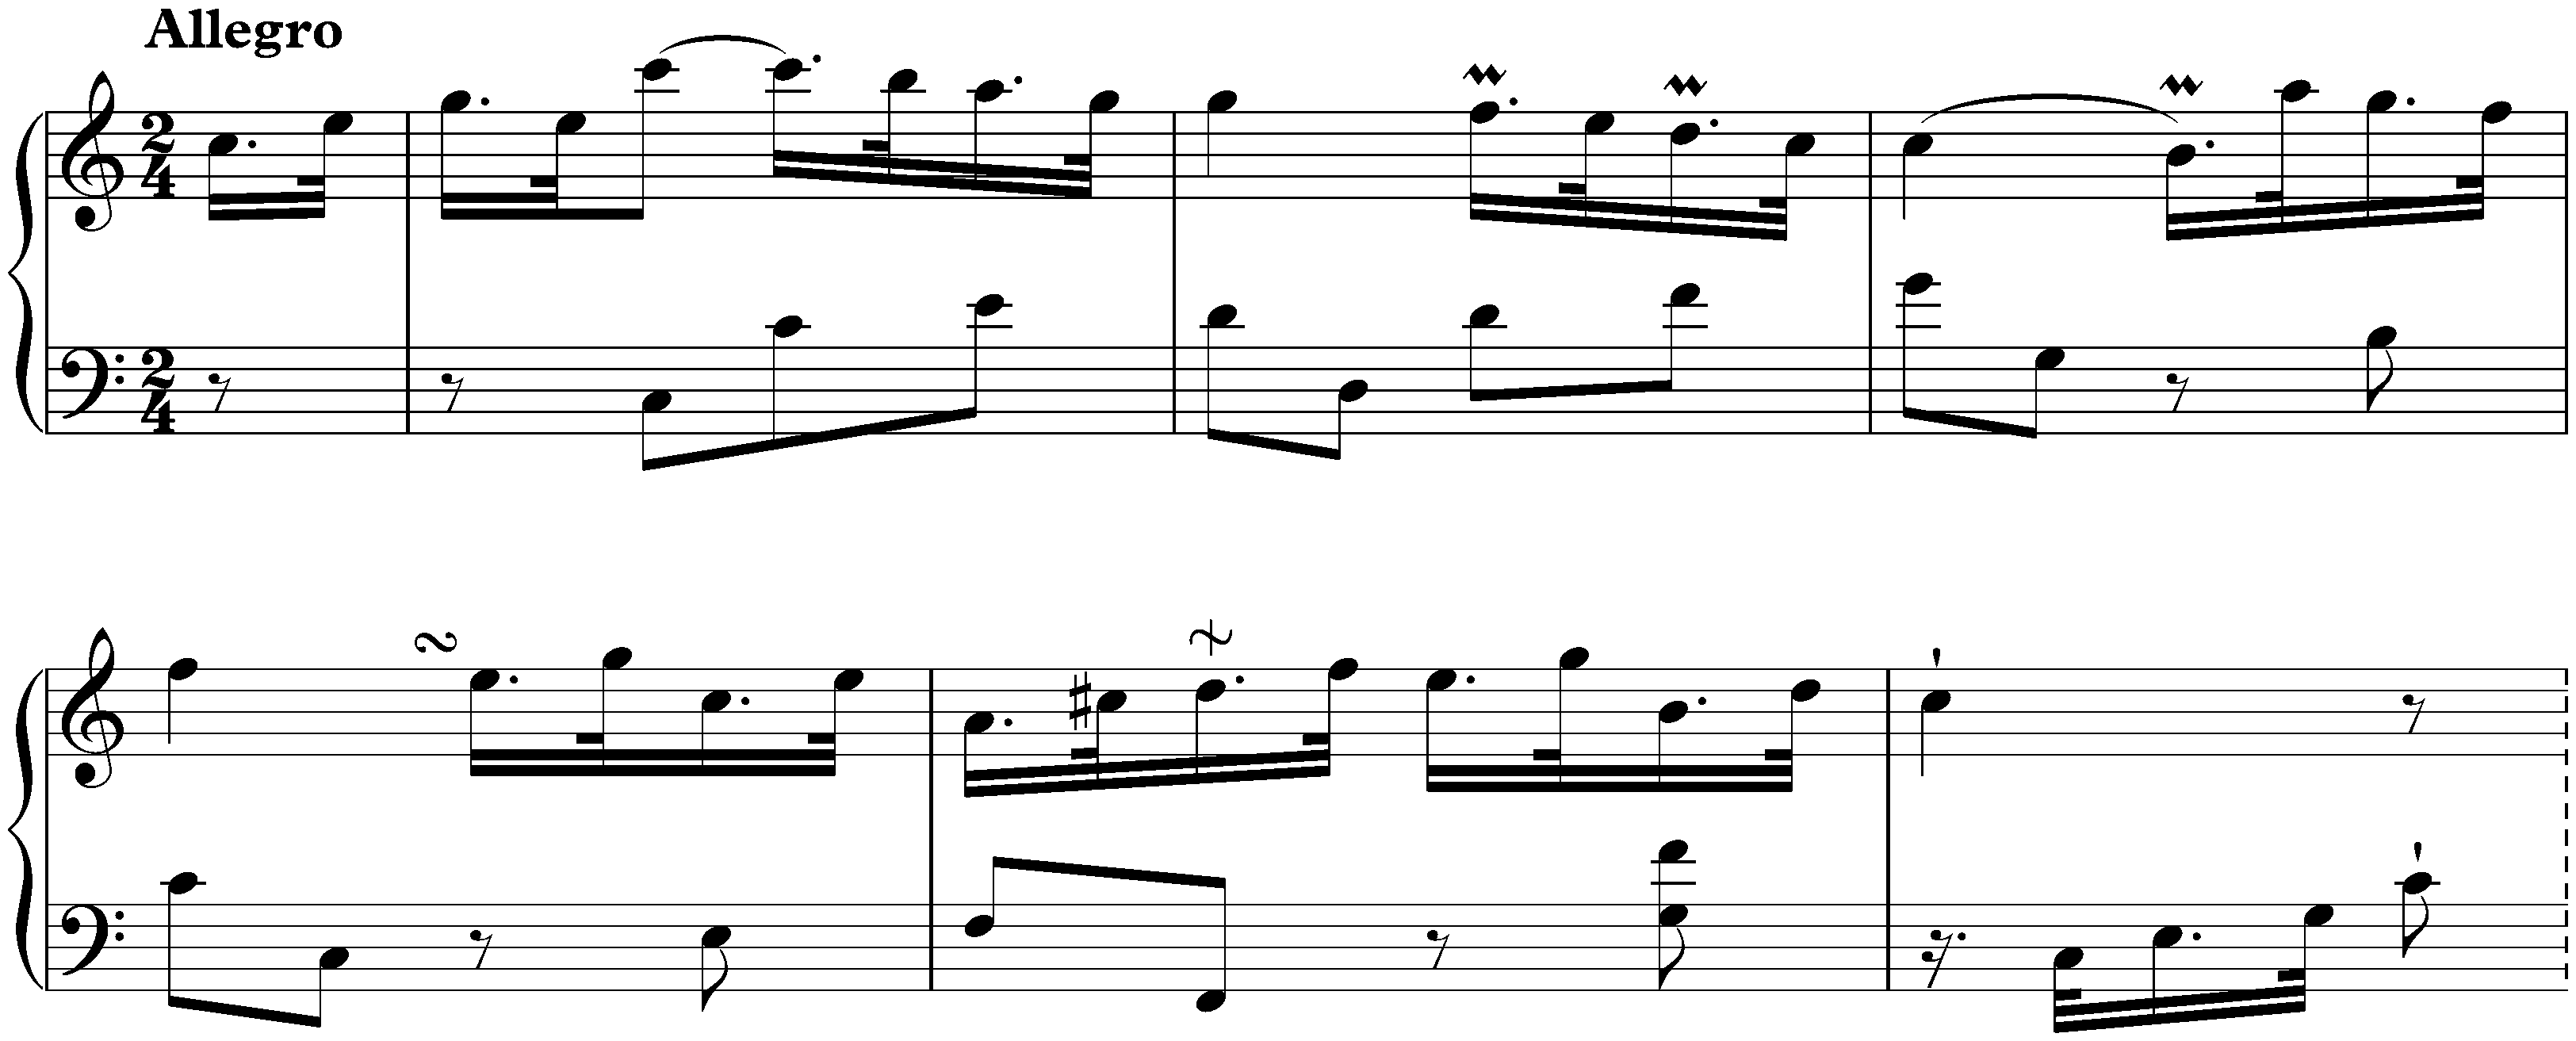 Sonata in C major, Hob. XVI:21; 1. Allegro